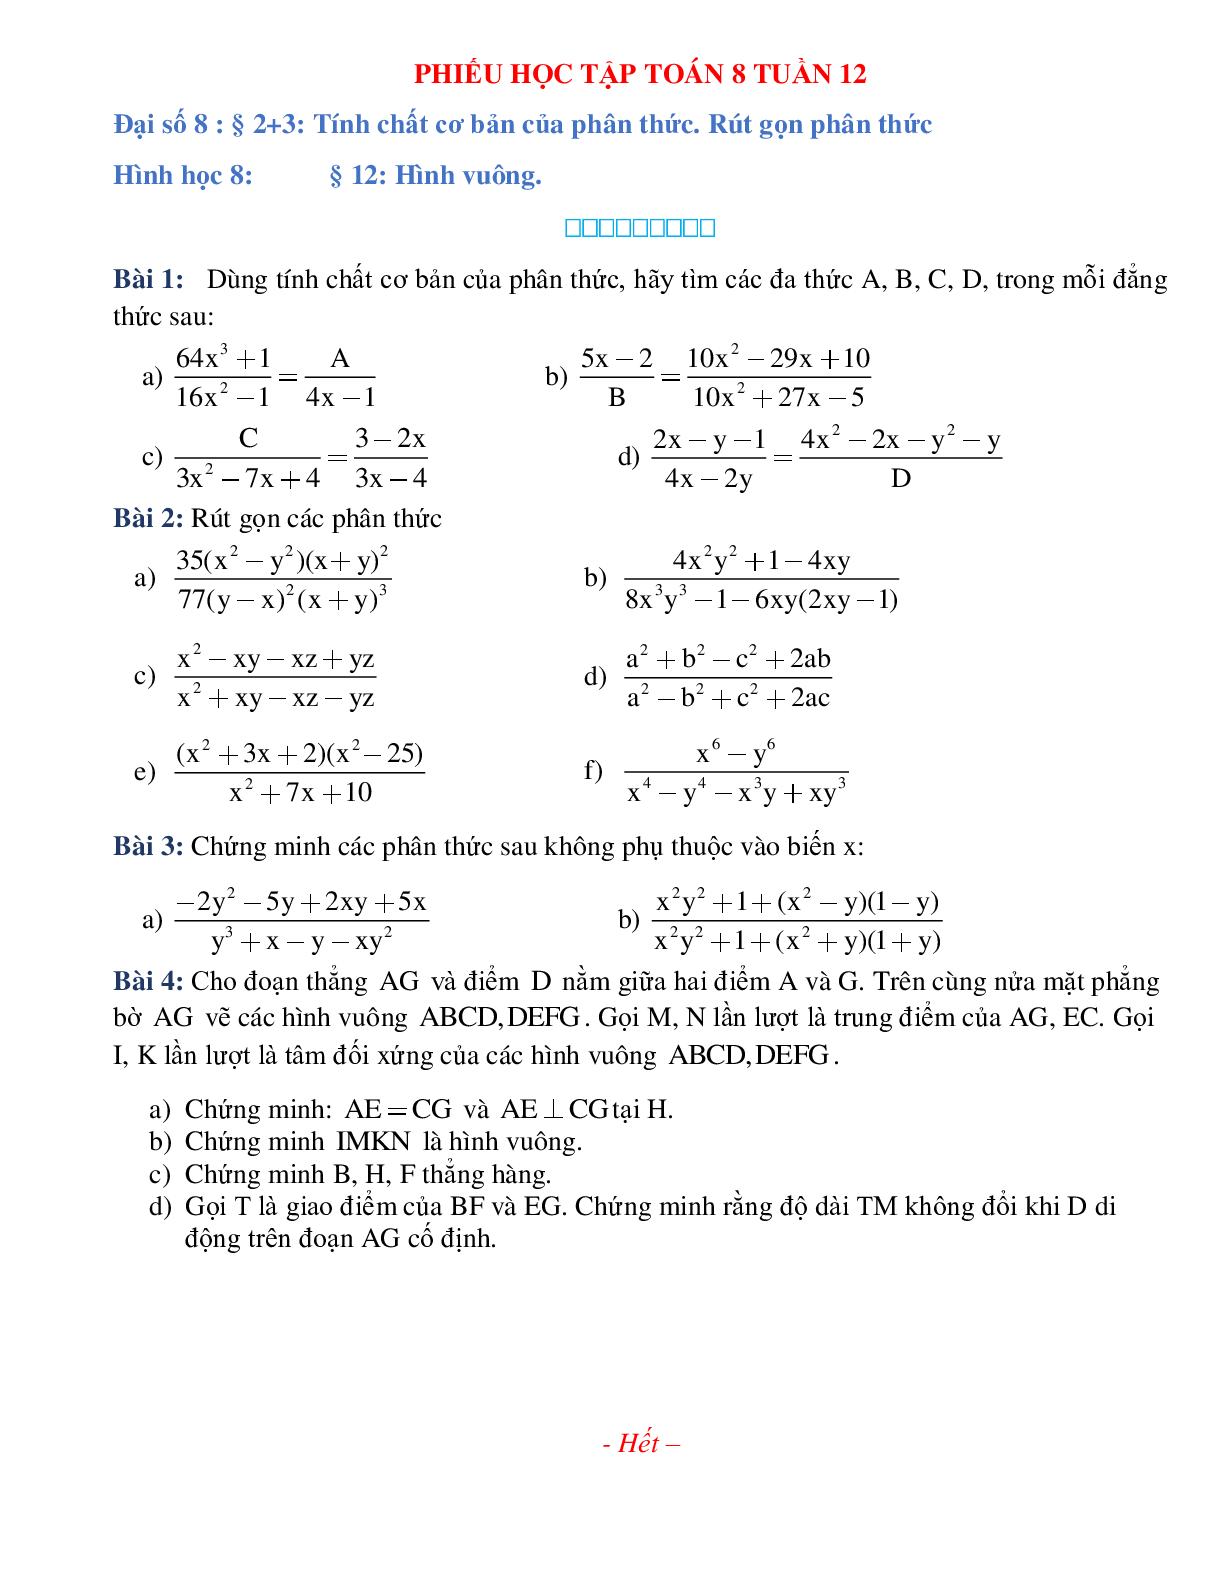 Phiếu bài tập tuần 12 - Toán 8 (trang 1)